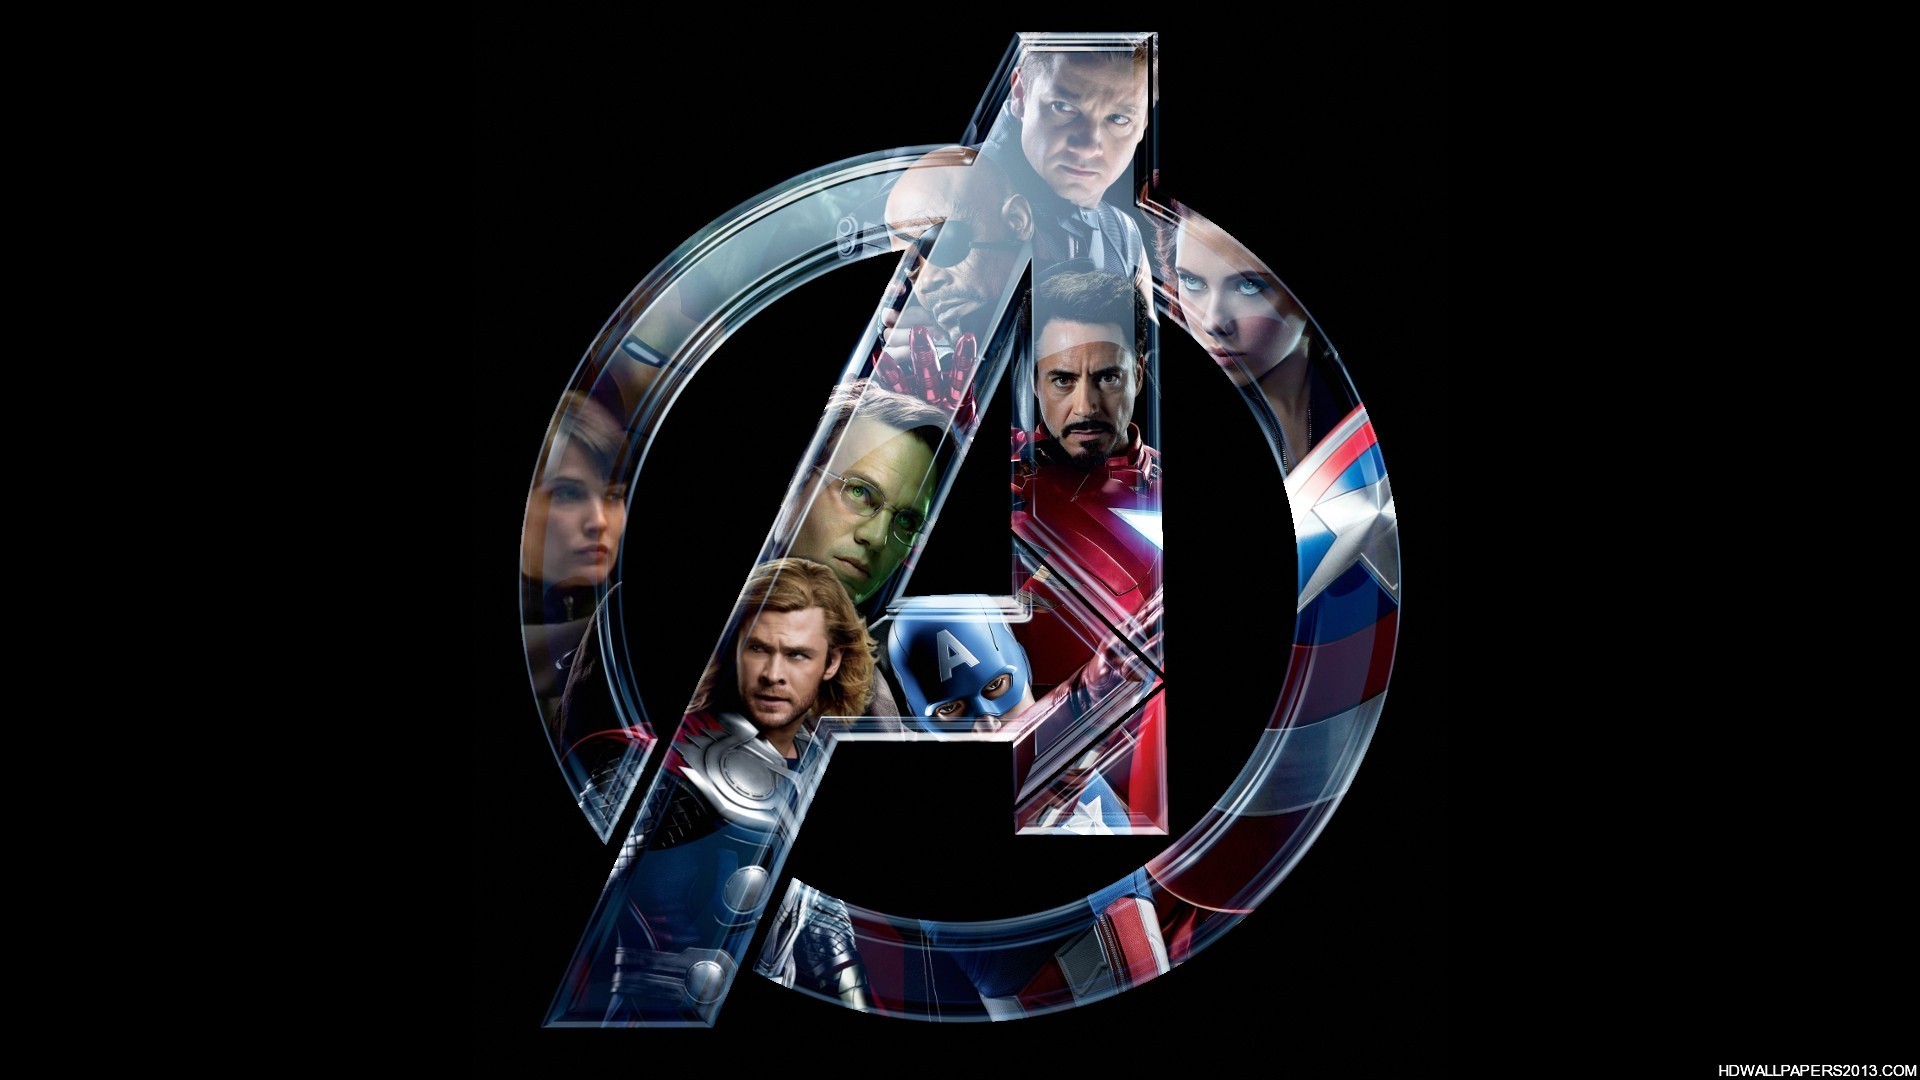 Cool Avengers Wallpaper High Definition